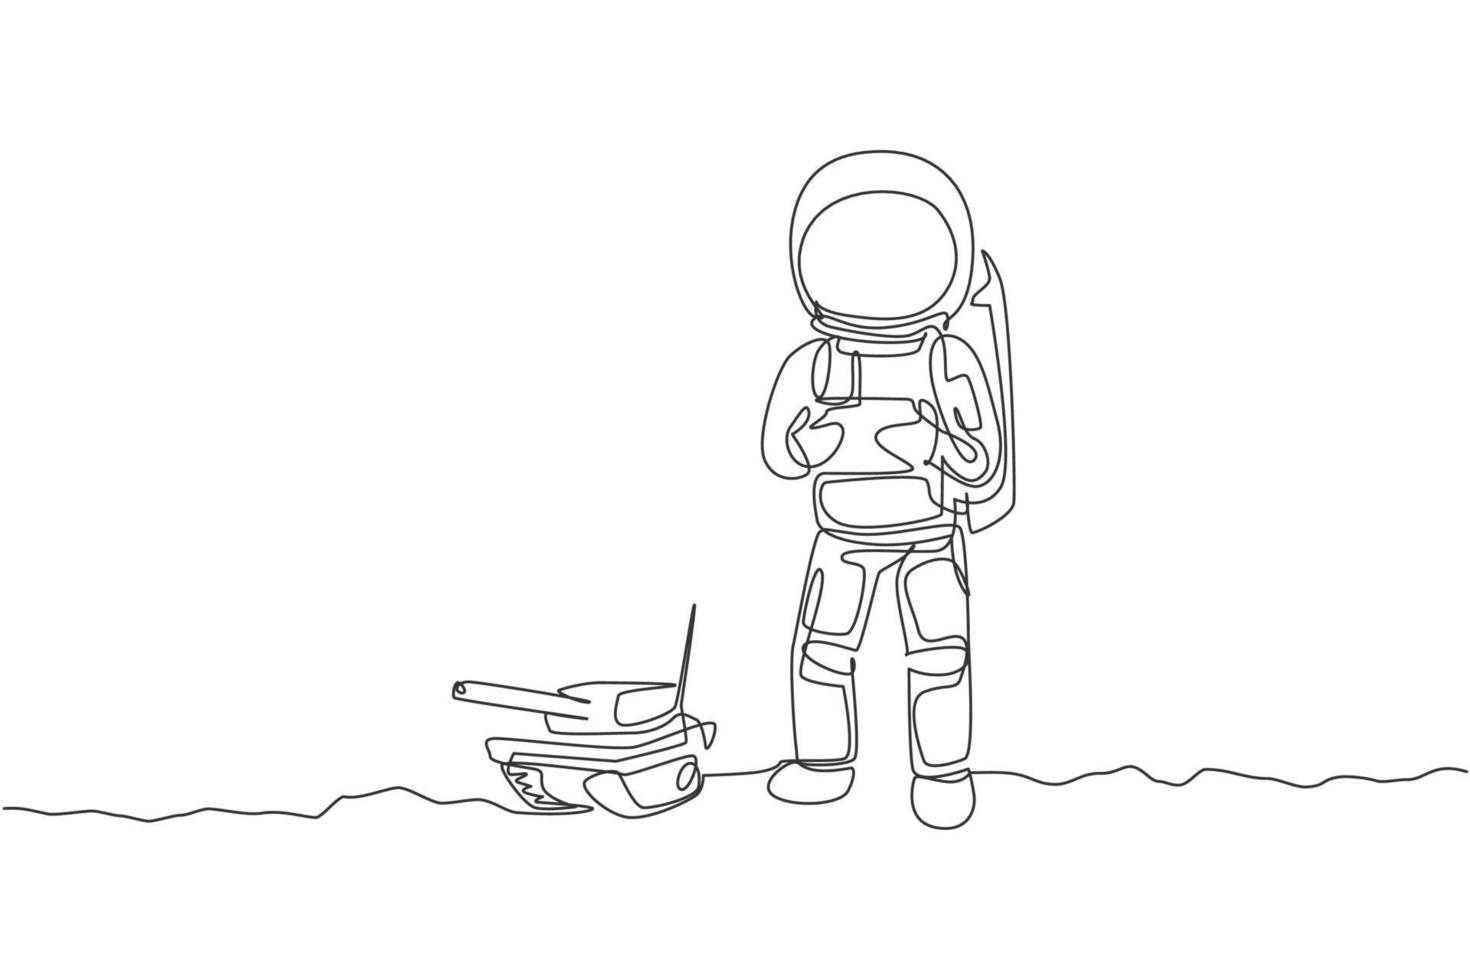 um desenho de linha contínua do astronauta jogando o controle de rádio do tanque de guerra na galáxia cósmica da lua. conceito de passatempo e estilo de vida do espaço sideral. ilustração em vetor gráfico de desenho de linha única dinâmica